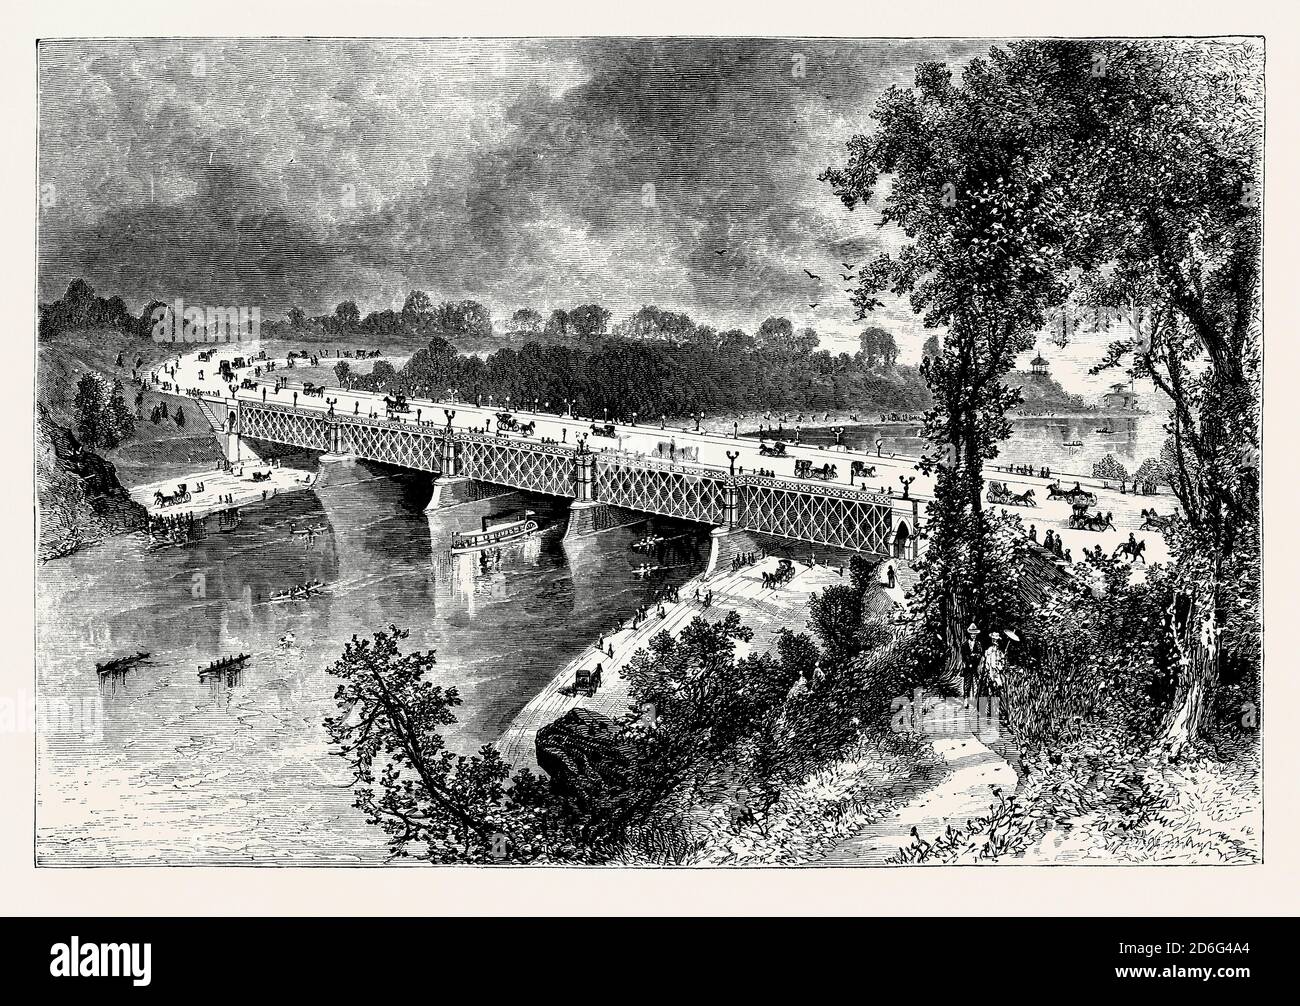 Una vecchia incisione del Falls Bridge, Philadelphia, Pennsylvania, USA. E 'da un libro di ingegneria meccanica vittoriana del 1880. Si estende sul fiume Schuylkill nel Fairmount Park. Il ponte lungo 556 piedi (169 m) è dotato di abutment e pier in pietra, con tre tralicci di tipo Pratt collegati a pin. Fu costruito nel 1894–1895 sotto la direzione di George Smedley Webster e James H Windrim del Dipartimento dei lavori pubblici di Filadelfia. Il ponte è stato progettato come un ponte a due piani, ma il ponte superiore non è mai stato costruito per mancanza di fondi. Foto Stock